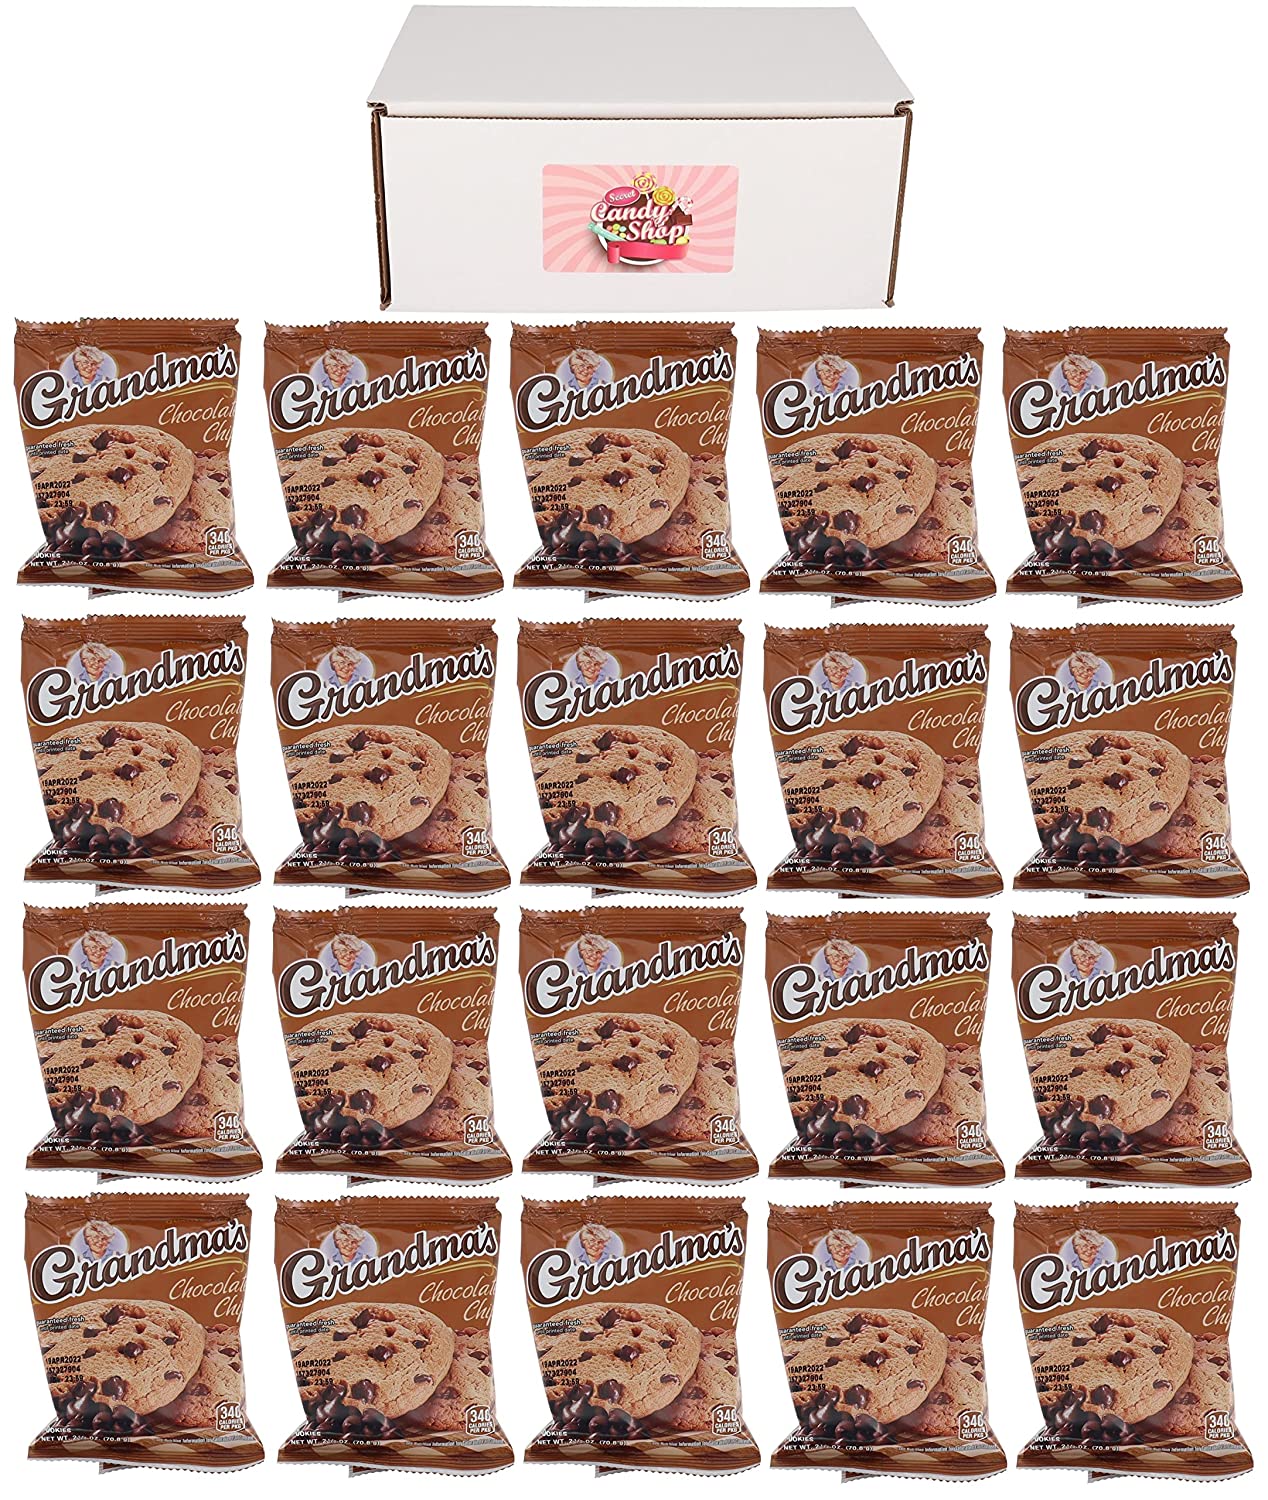 Grandma's Cookies In Box (Pack of 20, Total of 40 Cookies)